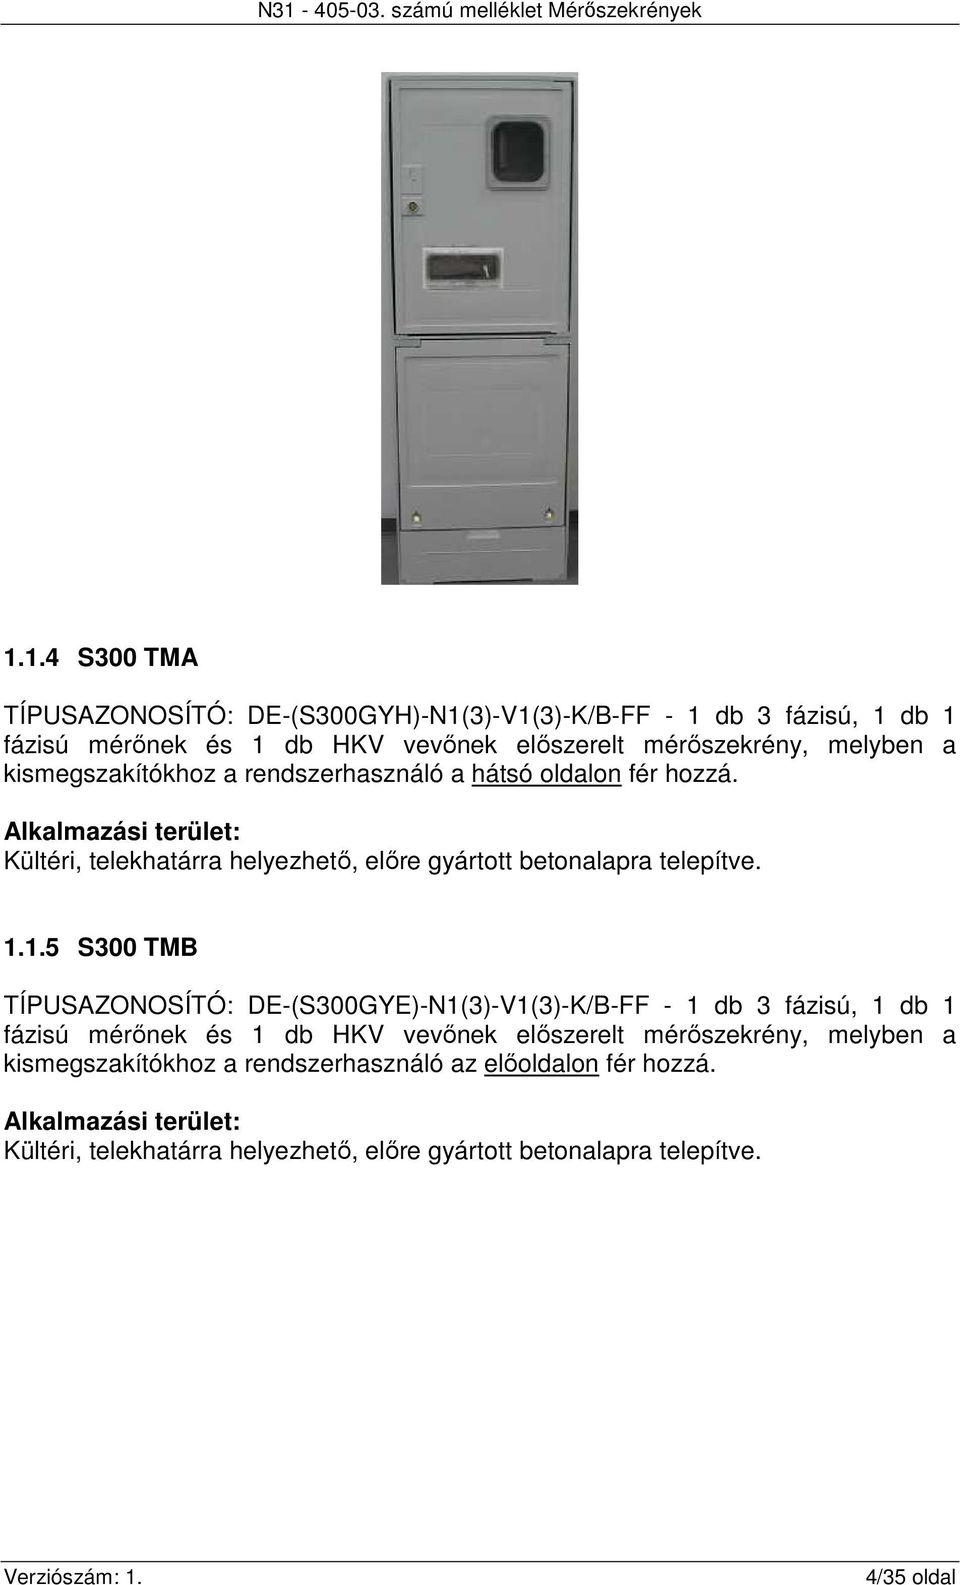 1.5 S300 TMB TÍPUSAZONOSÍTÓ: DE-(S300GYE)-N1(3)-V1(3)-K/B-FF - 1 db 3 fázisú, 1 db 1 fázisú mérőnek és 1 db HKV vevőnek előszerelt mérőszekrény, melyben a